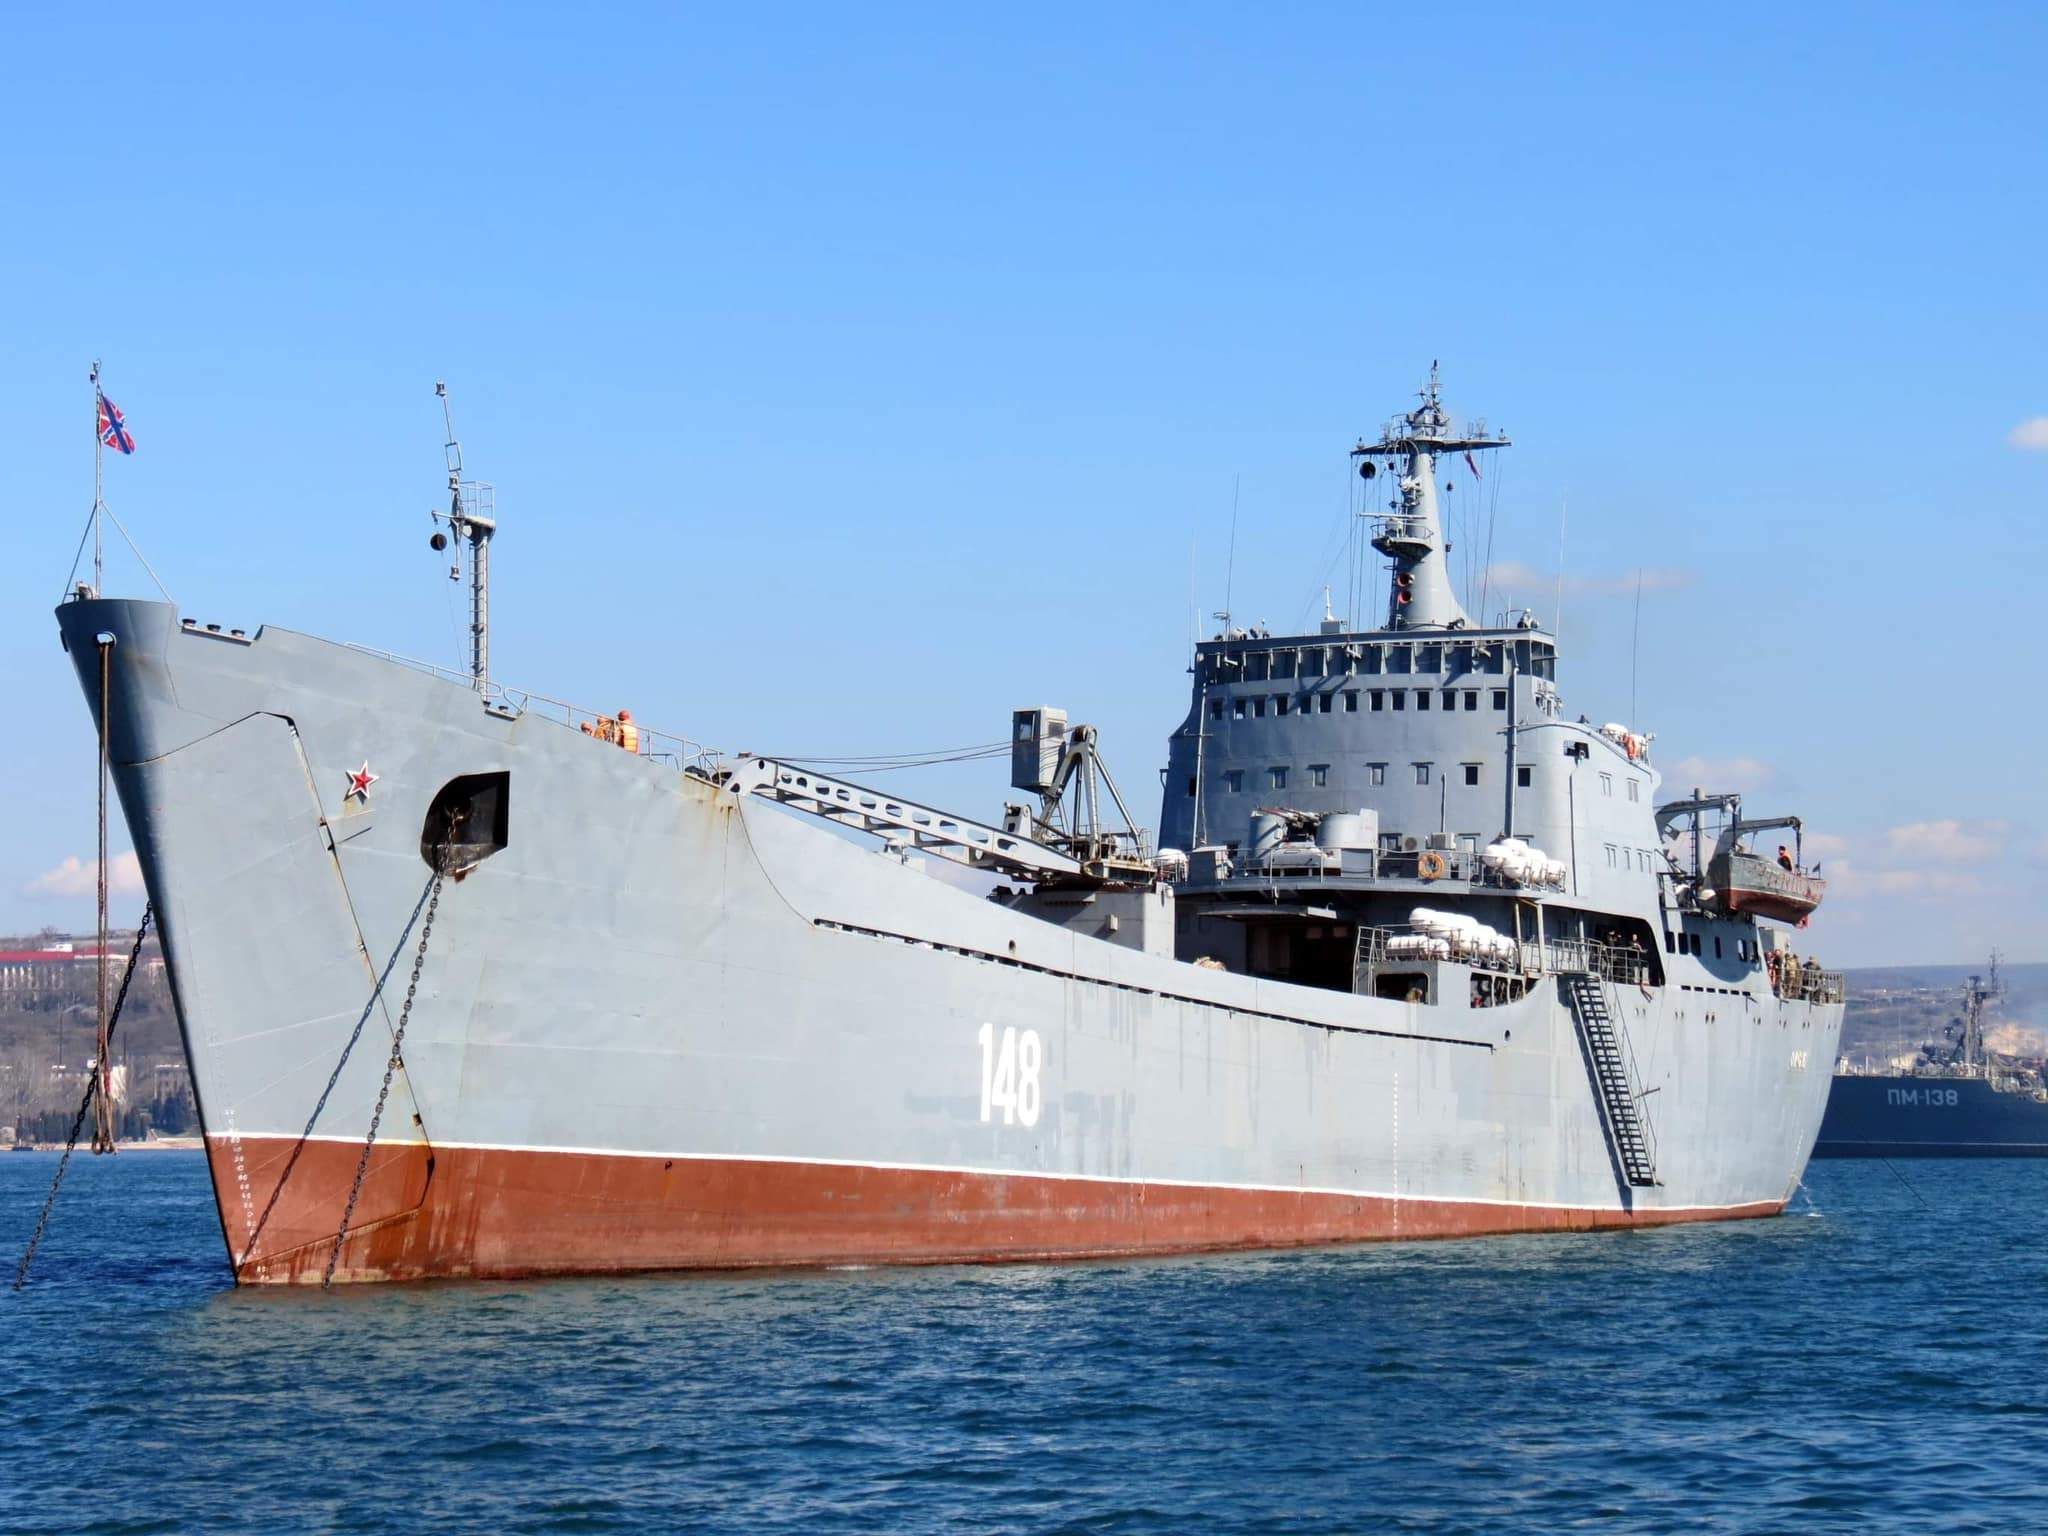 "Величезна ціль": в Міноборони прокоментували знищення корабля "Орськ" - 24 Канал